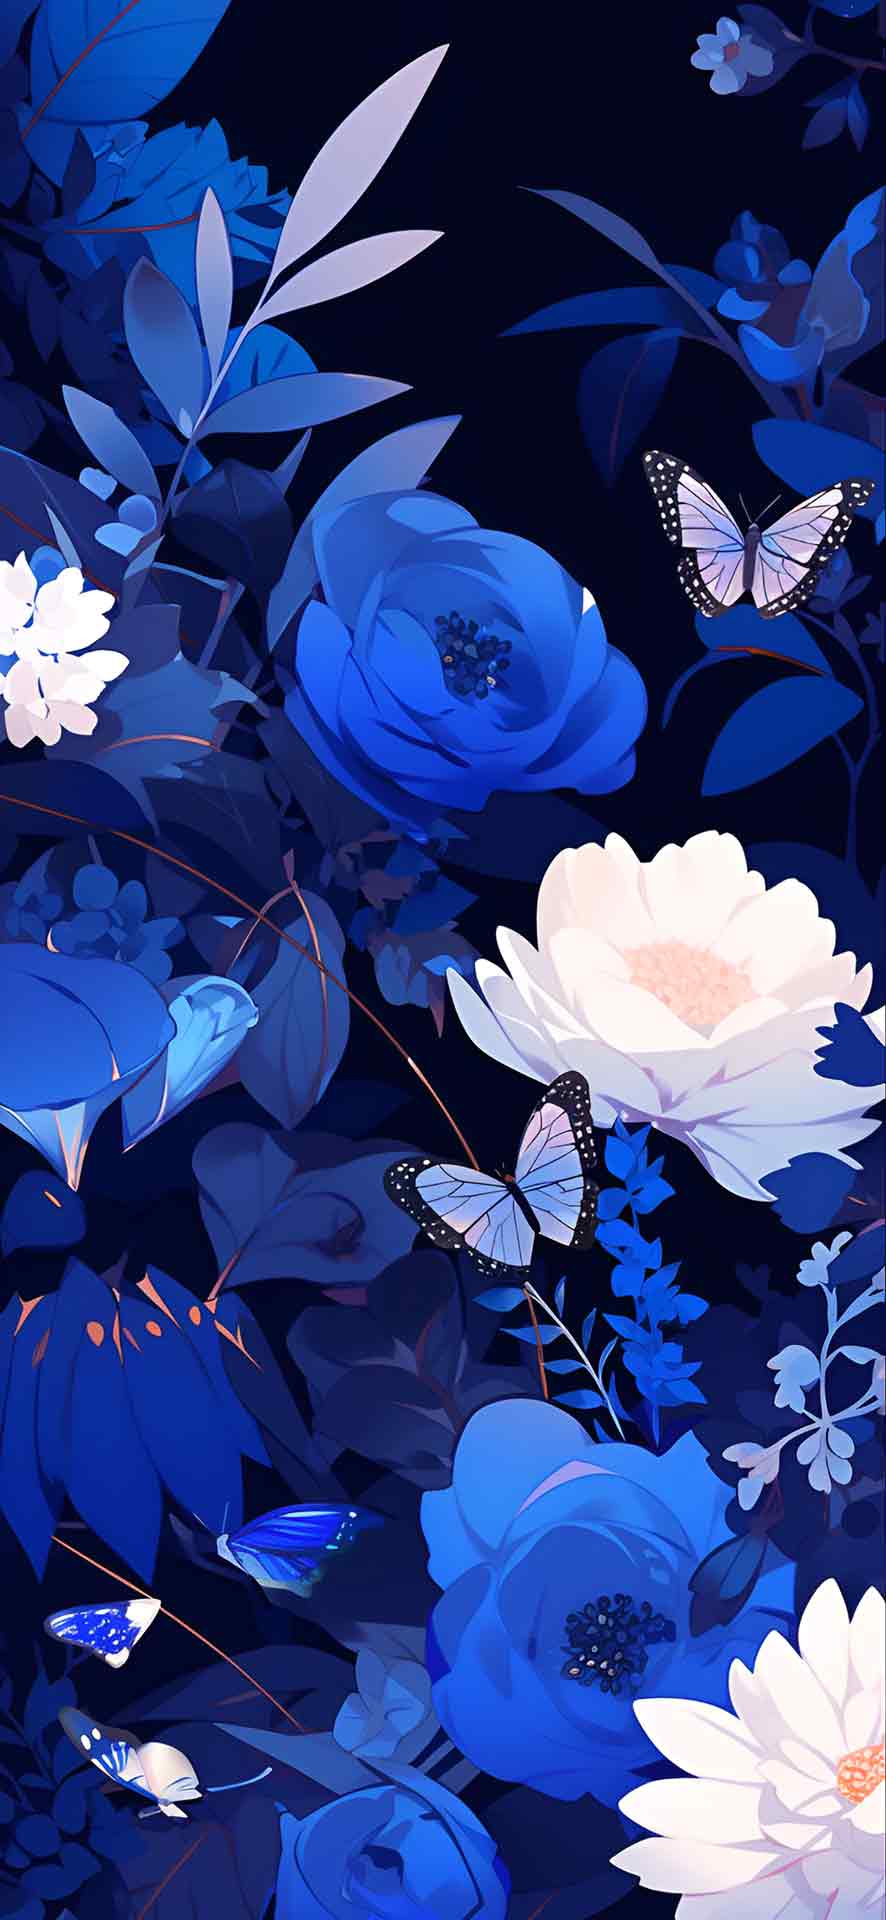 蓝色和白色的花朵美学壁纸